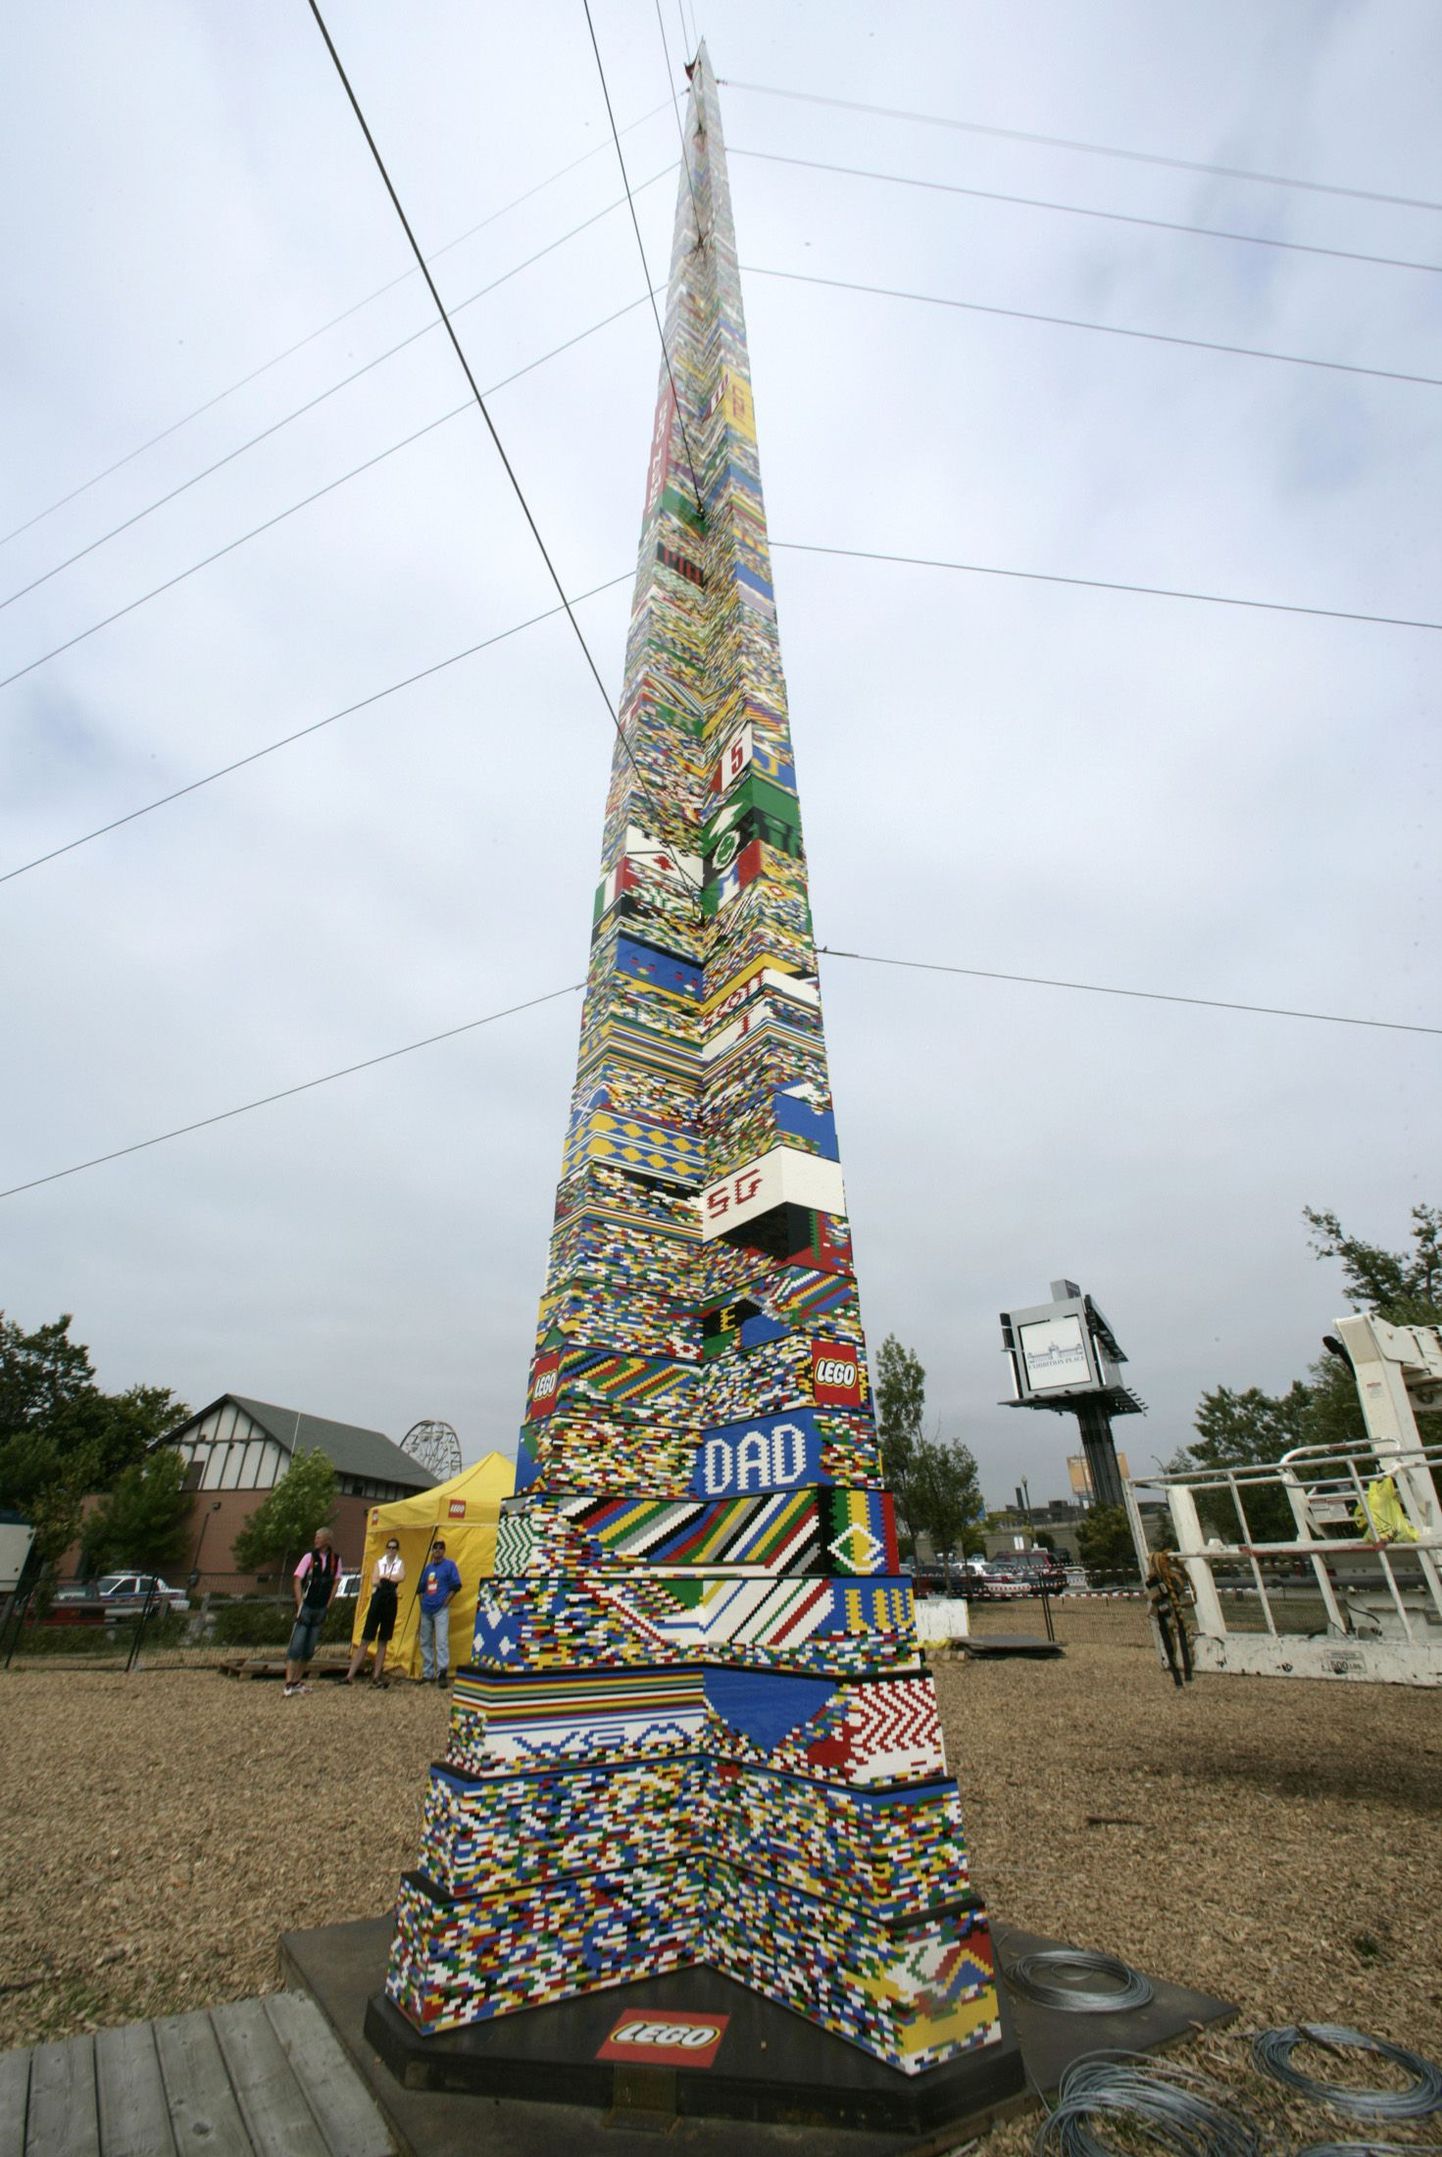 Möödunud aastal Torontos valminud  Lego klotsidest torni kõrgus oli 29,3 meetrit